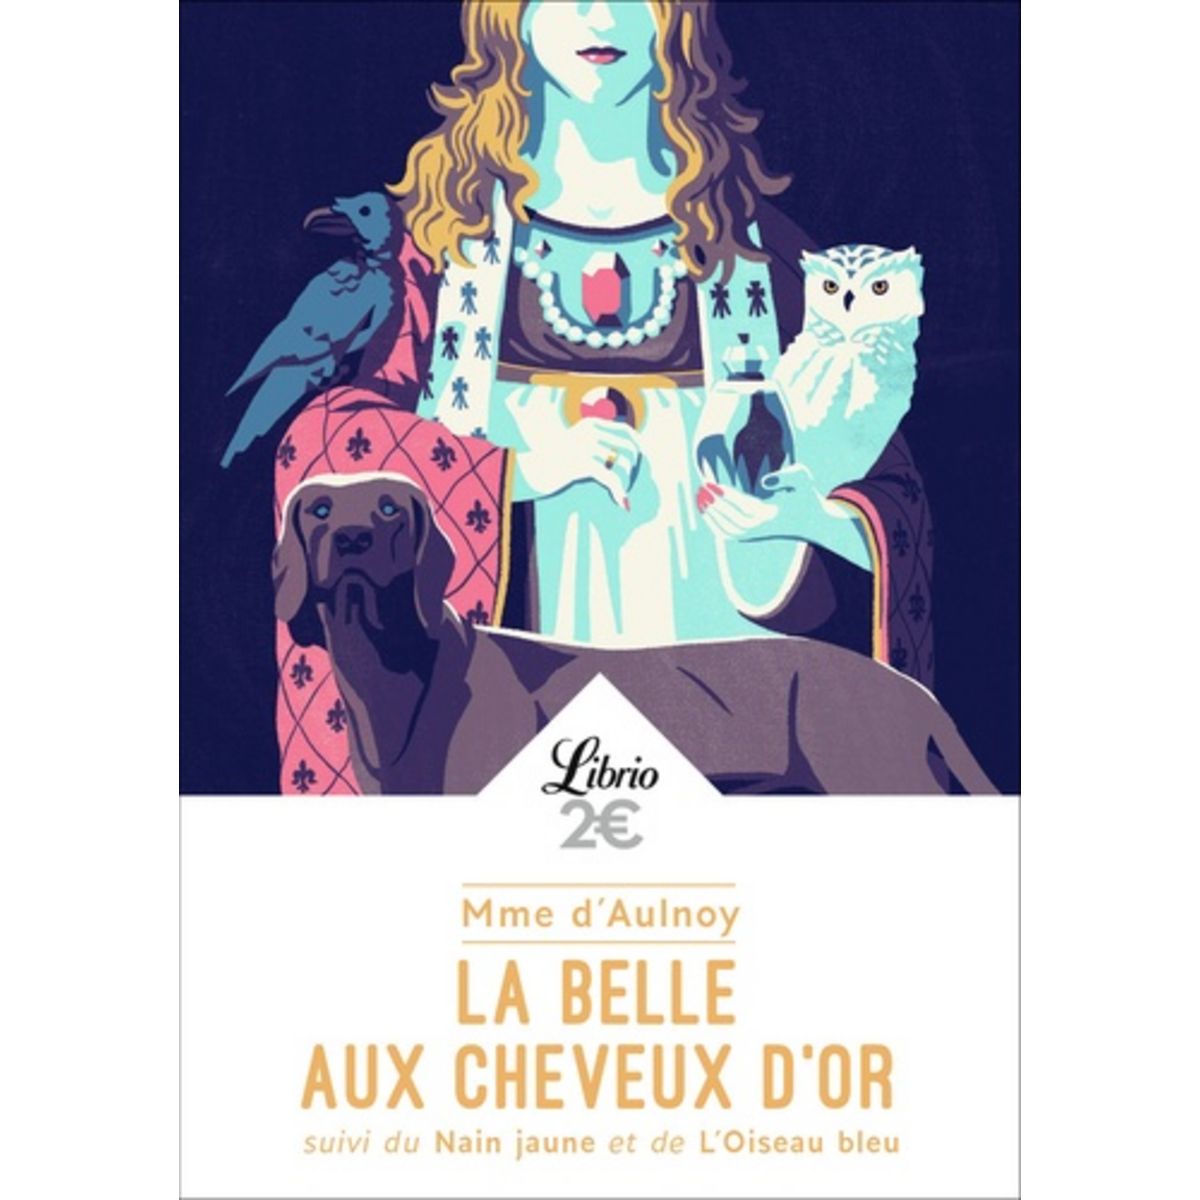  LA BELLE AUX CHEVEUX D'OR. SUIVI DU NAIN JAUNE ET DE L'OISEAU BLEU, Madame d'Aulnoy